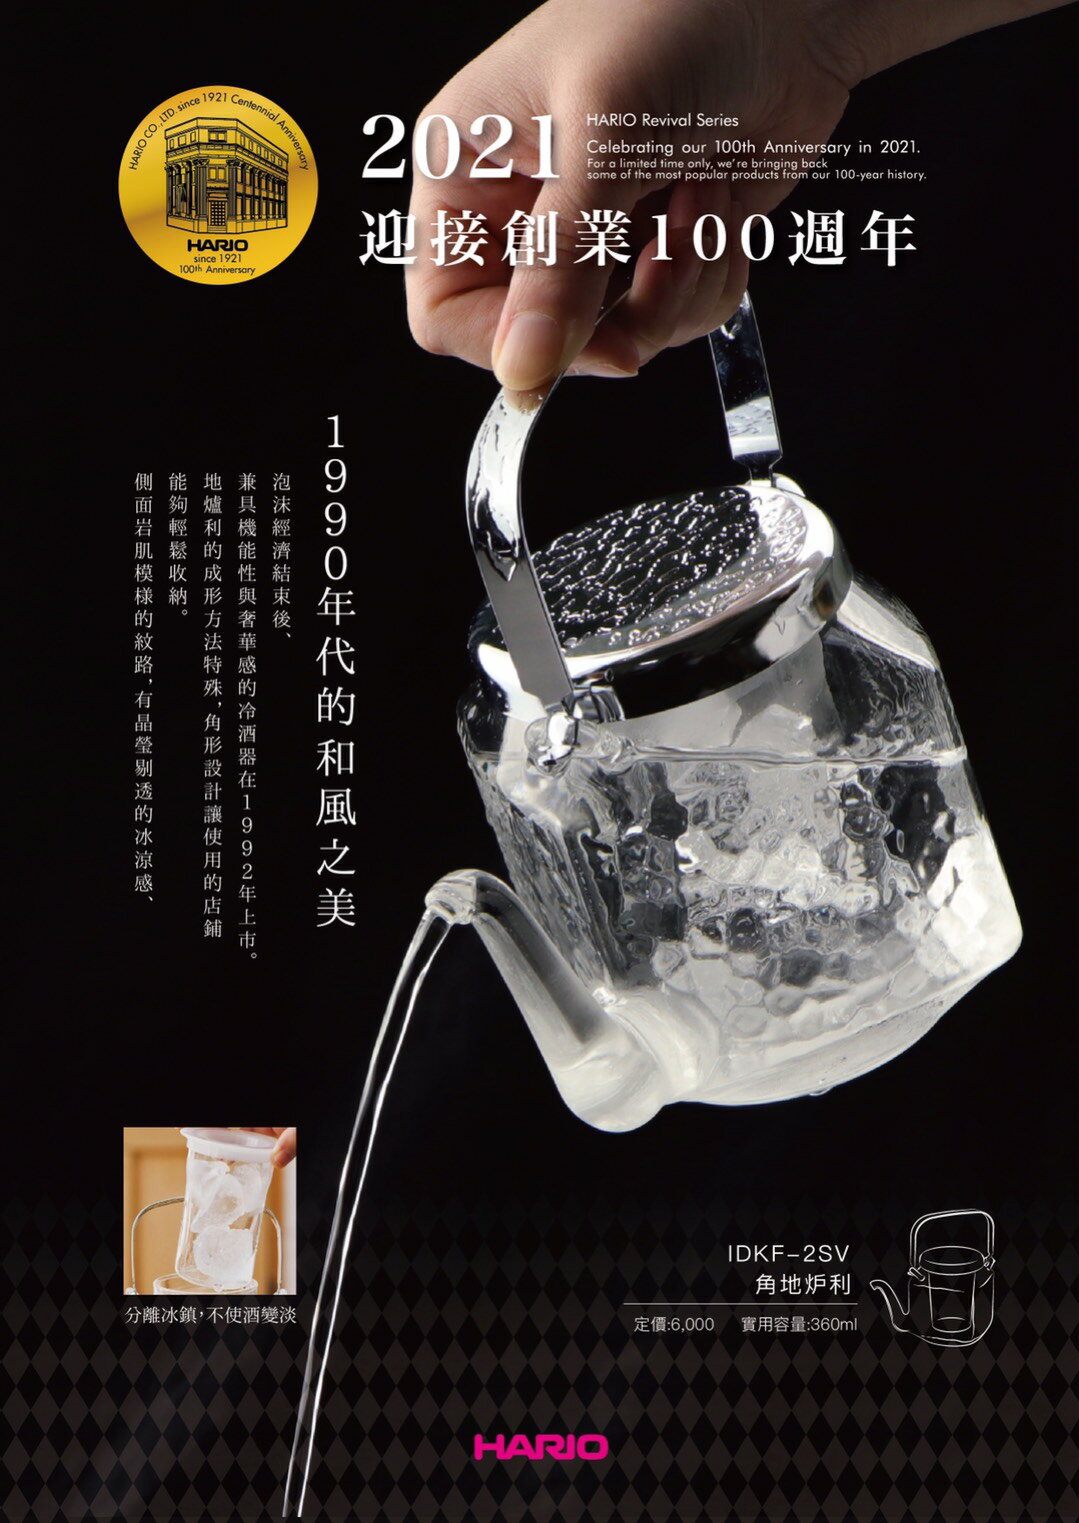 【沐湛咖啡】HARIO 100周年復刻版 冷酒器(角地炉利) IDKF-2SV 銀色/實用容量360ml 周年限定版